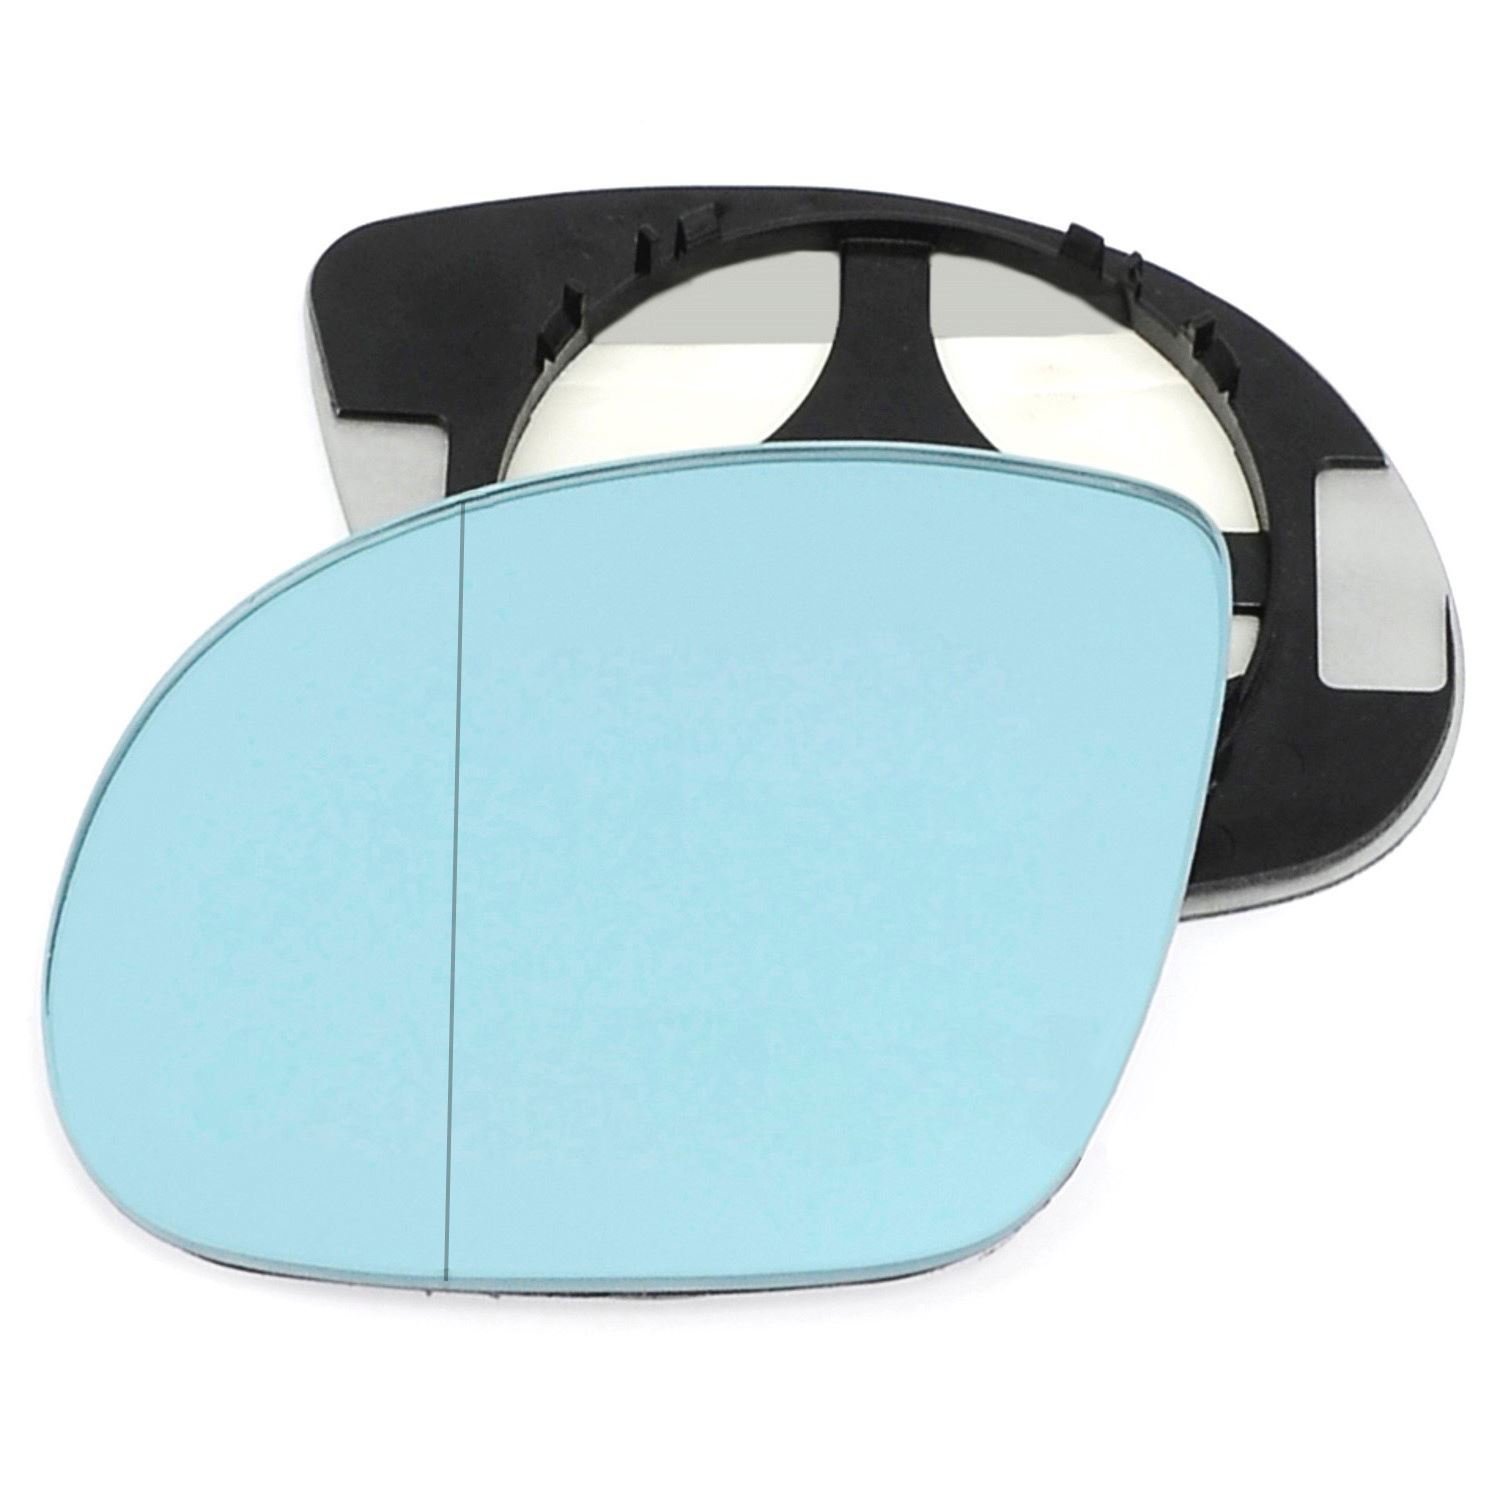 Passagier linken Seite Flügel Tür blau Spiegelglas mit Trägerplatte # w-bn/l-bwme3692 [Clip auf] von Sylgab